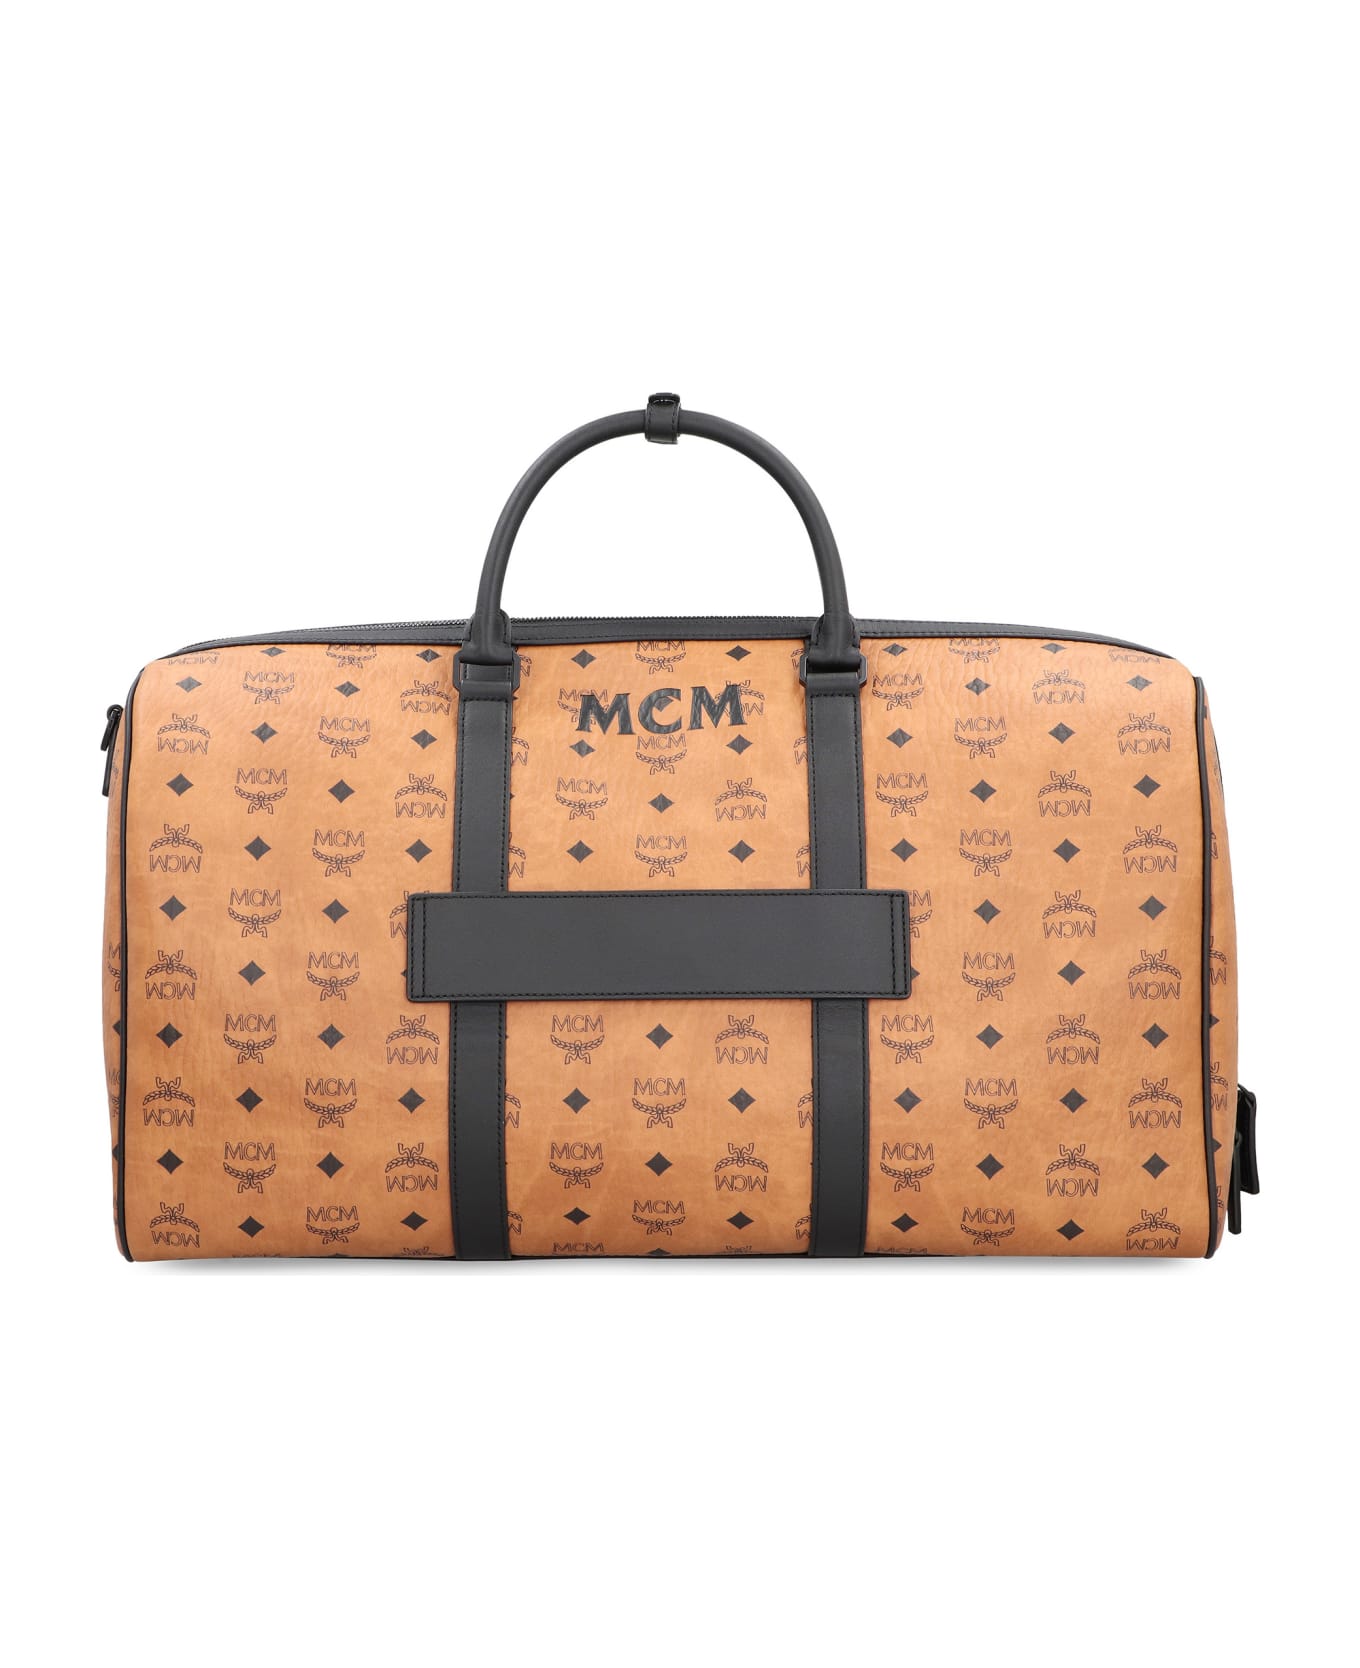 MCM Ottomar Weekender Travel Bag - BROWN/BLACK